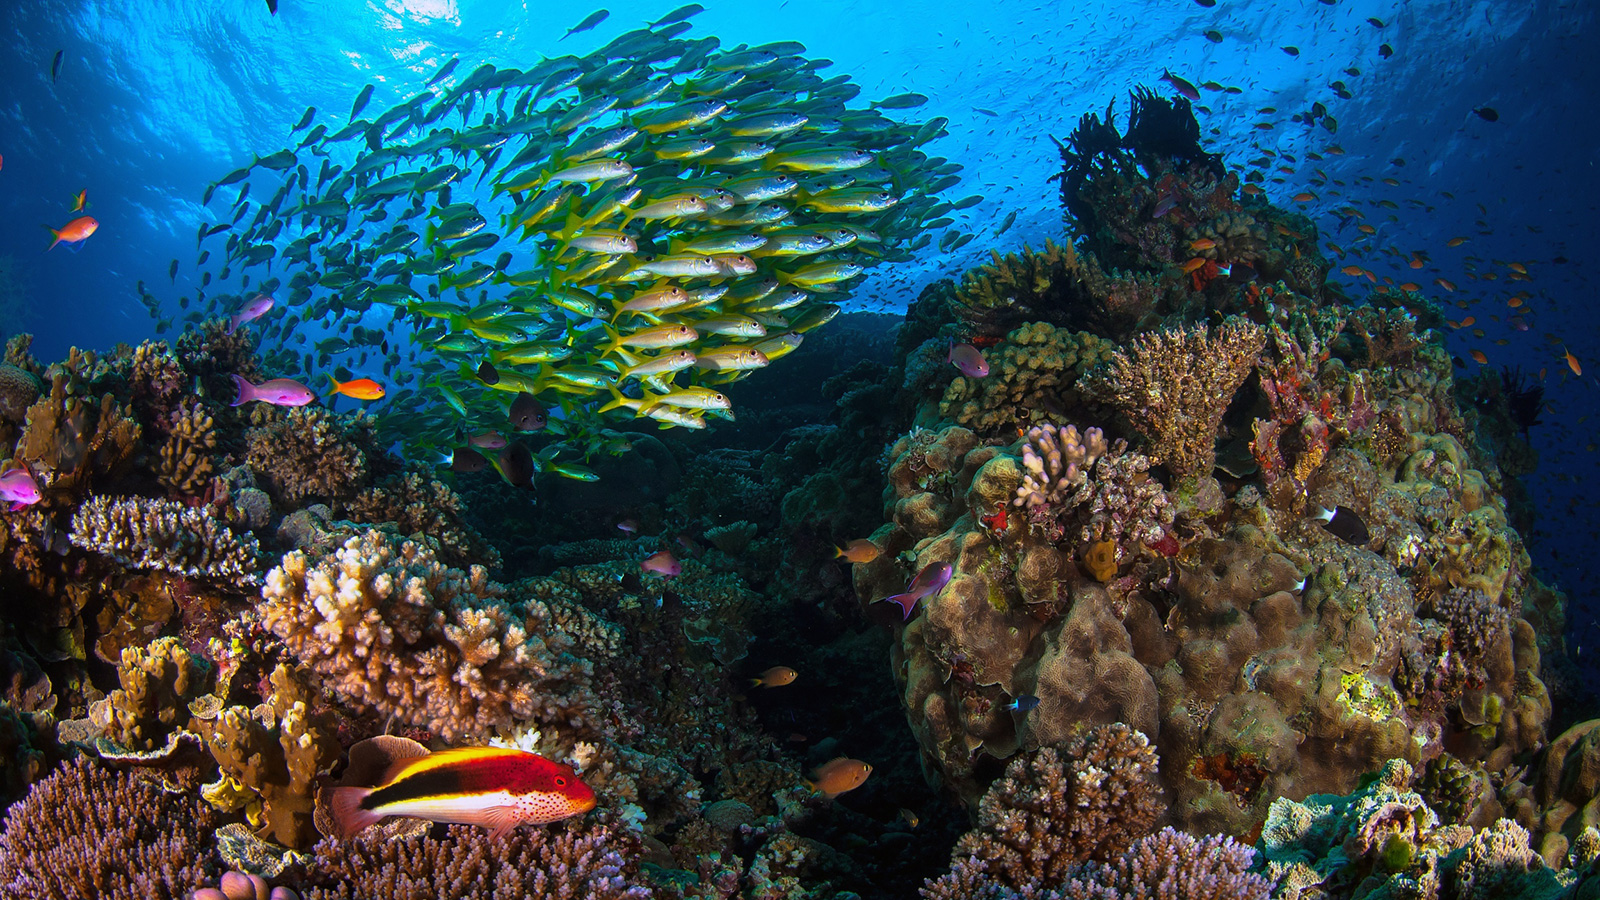 الشعاب المرجانية تكتسب ألوانها البهية من الطحالب التي تعيش في نسيجها وتوفر الطعام لها (الأوروبية)